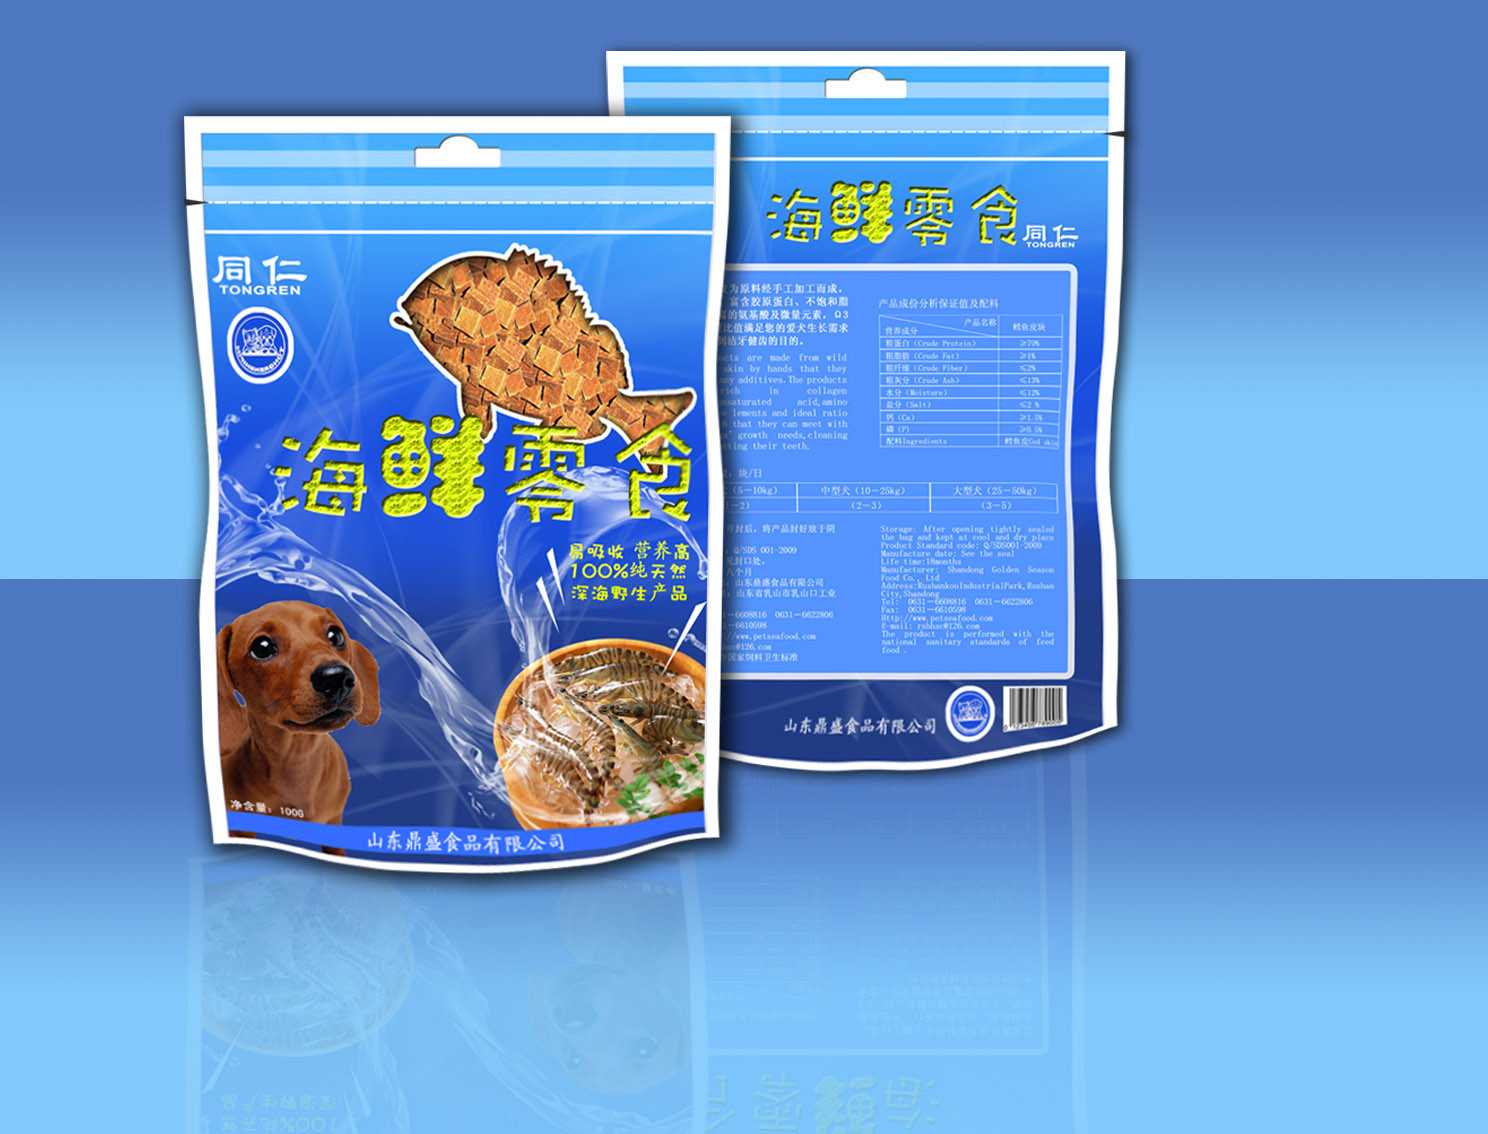 Evde beslenen hayvan / CPP Side - fermuar Stand Up fermuar deniz gıda Snack Bag paketleme